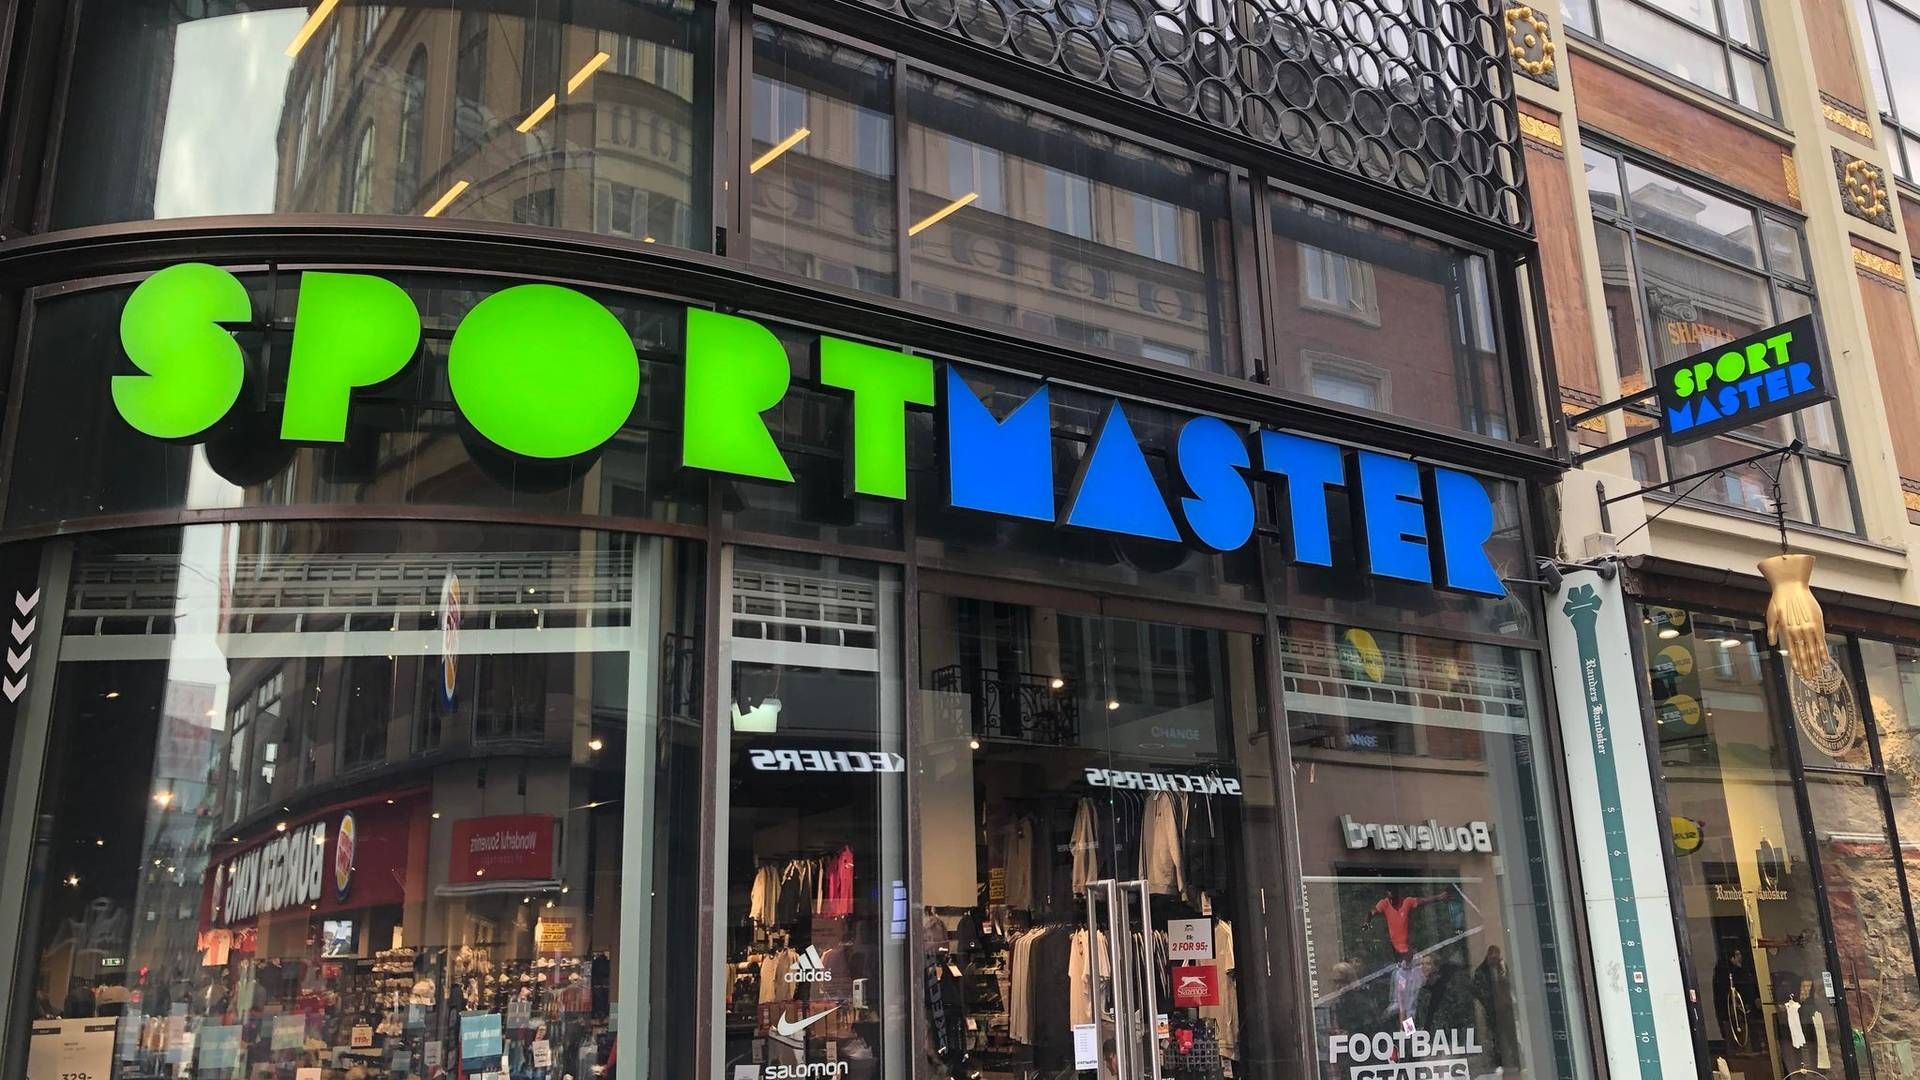 Sportmasters butik nær Rådhuspladsen i København er blandt de fire butikker, der er i gang med at lukke. Derudover er en butik i Veri Centret i Aarhus allerede lukket. | Foto: Alexander Thorup/detailwatch